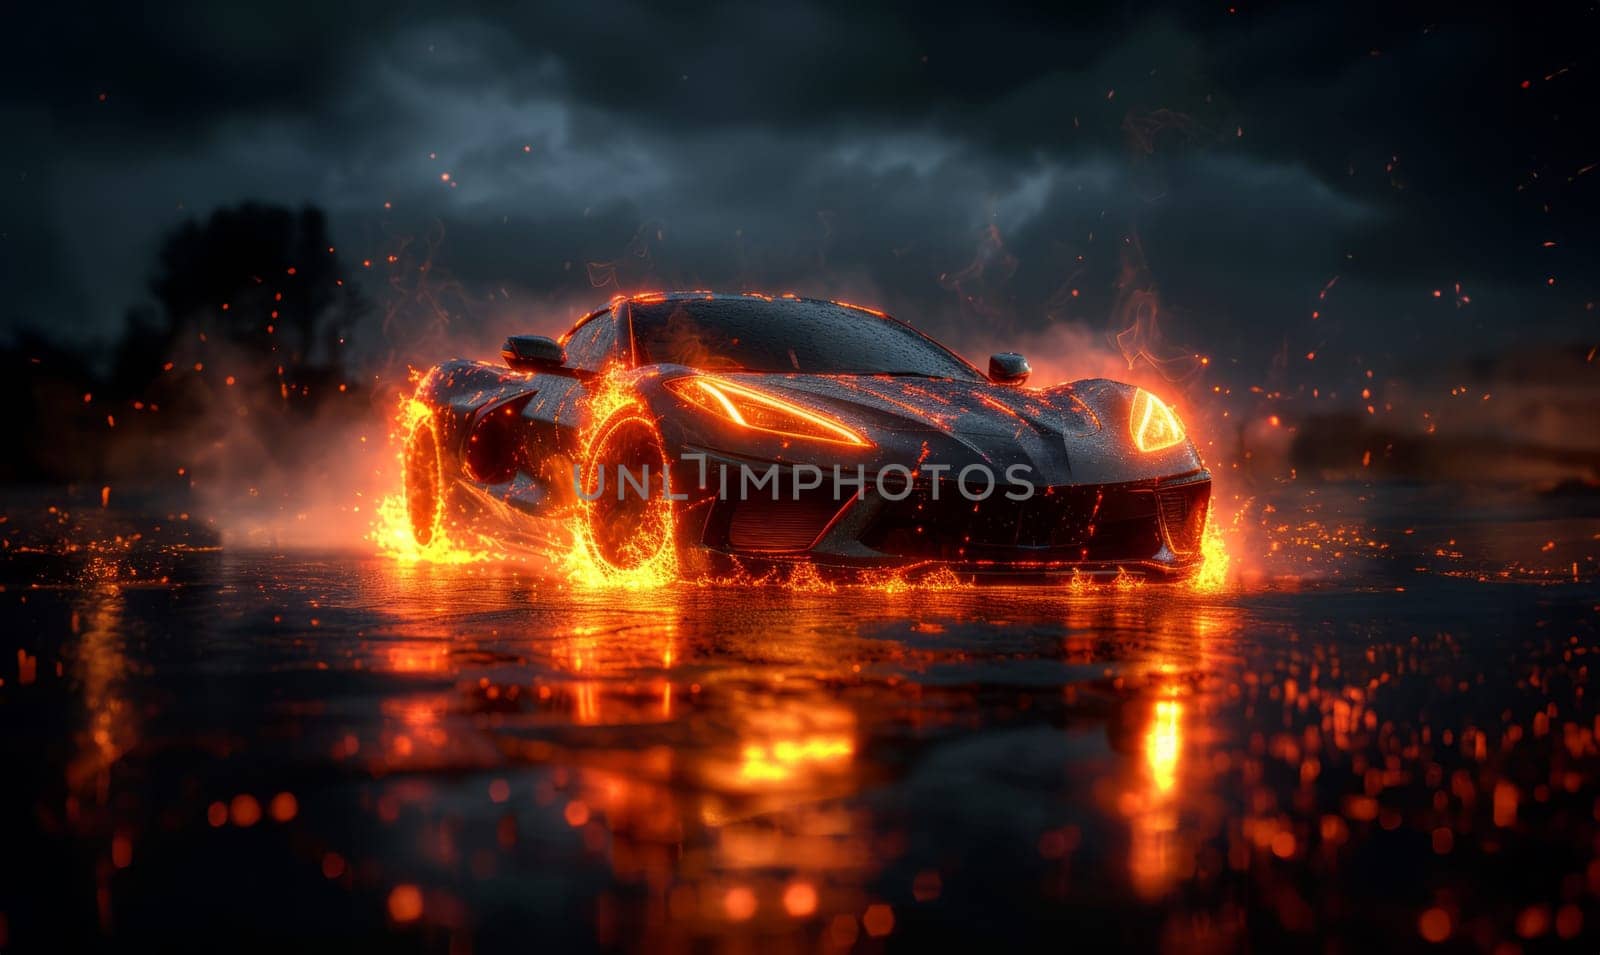 fiery sports car with sparkling sparks against the dark sky by studiodav